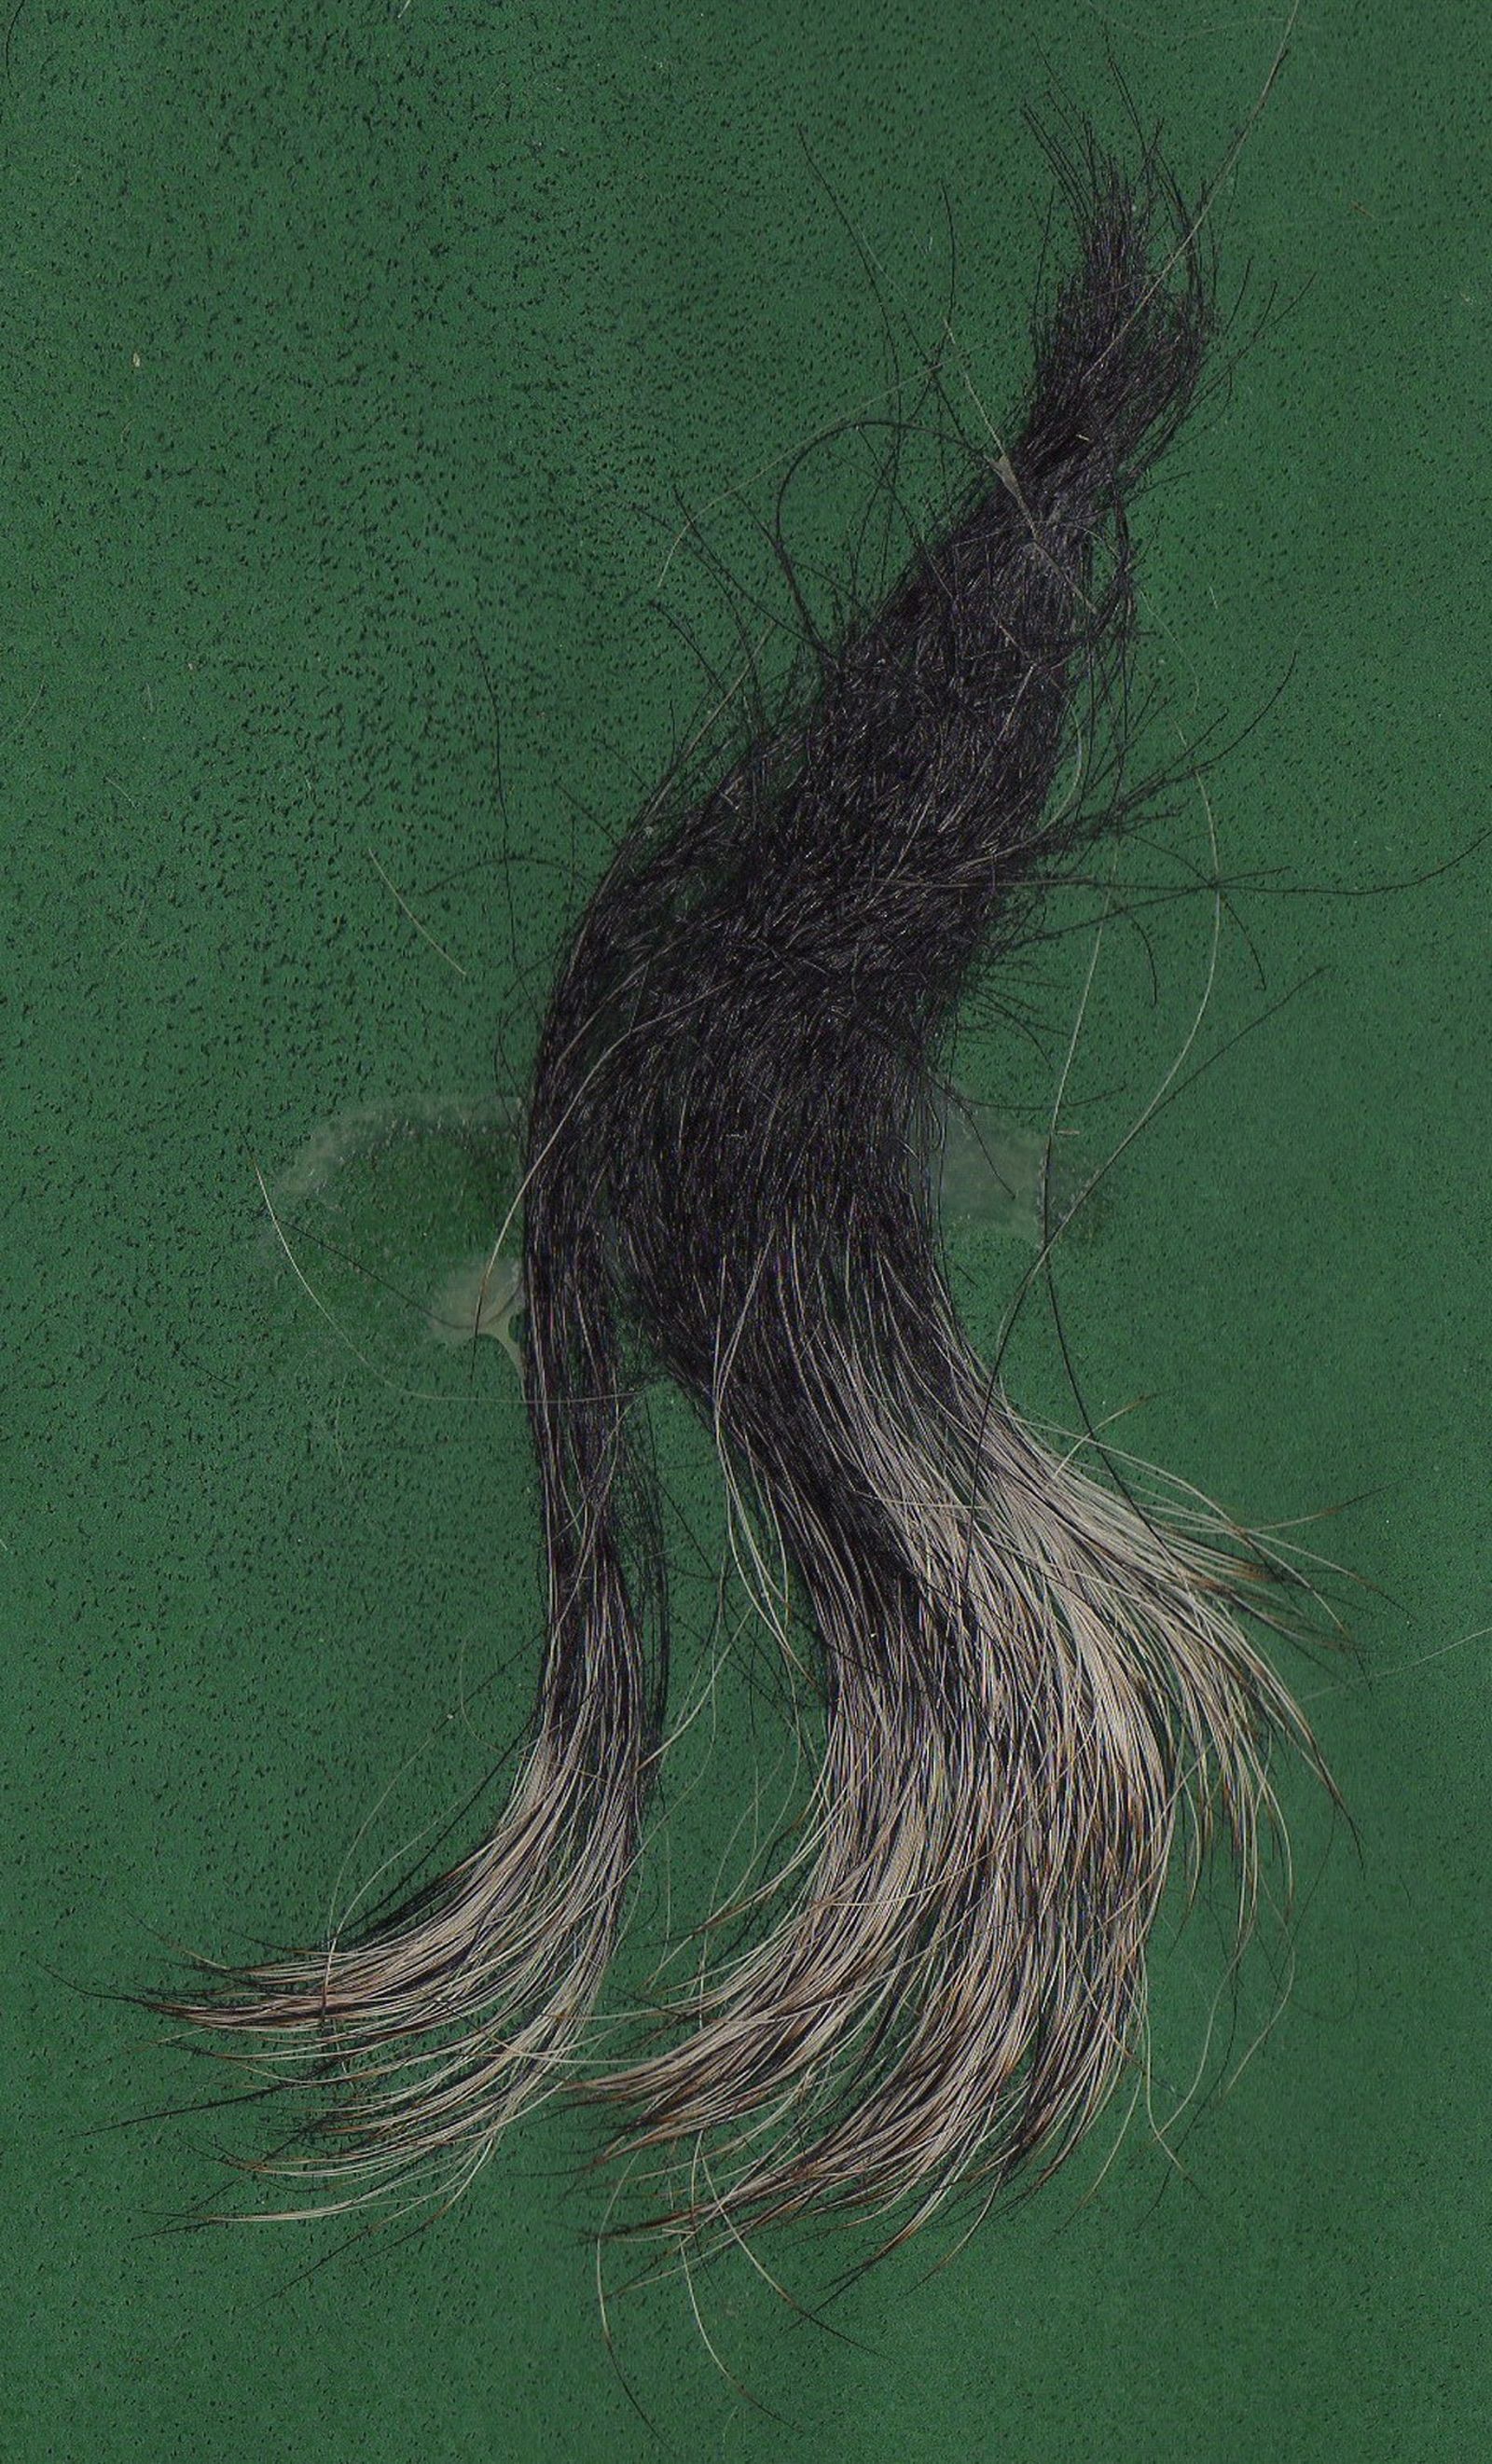 Schwarz-graue Haare vom Schnauzer in Großaufnahme auf grünem Untergund